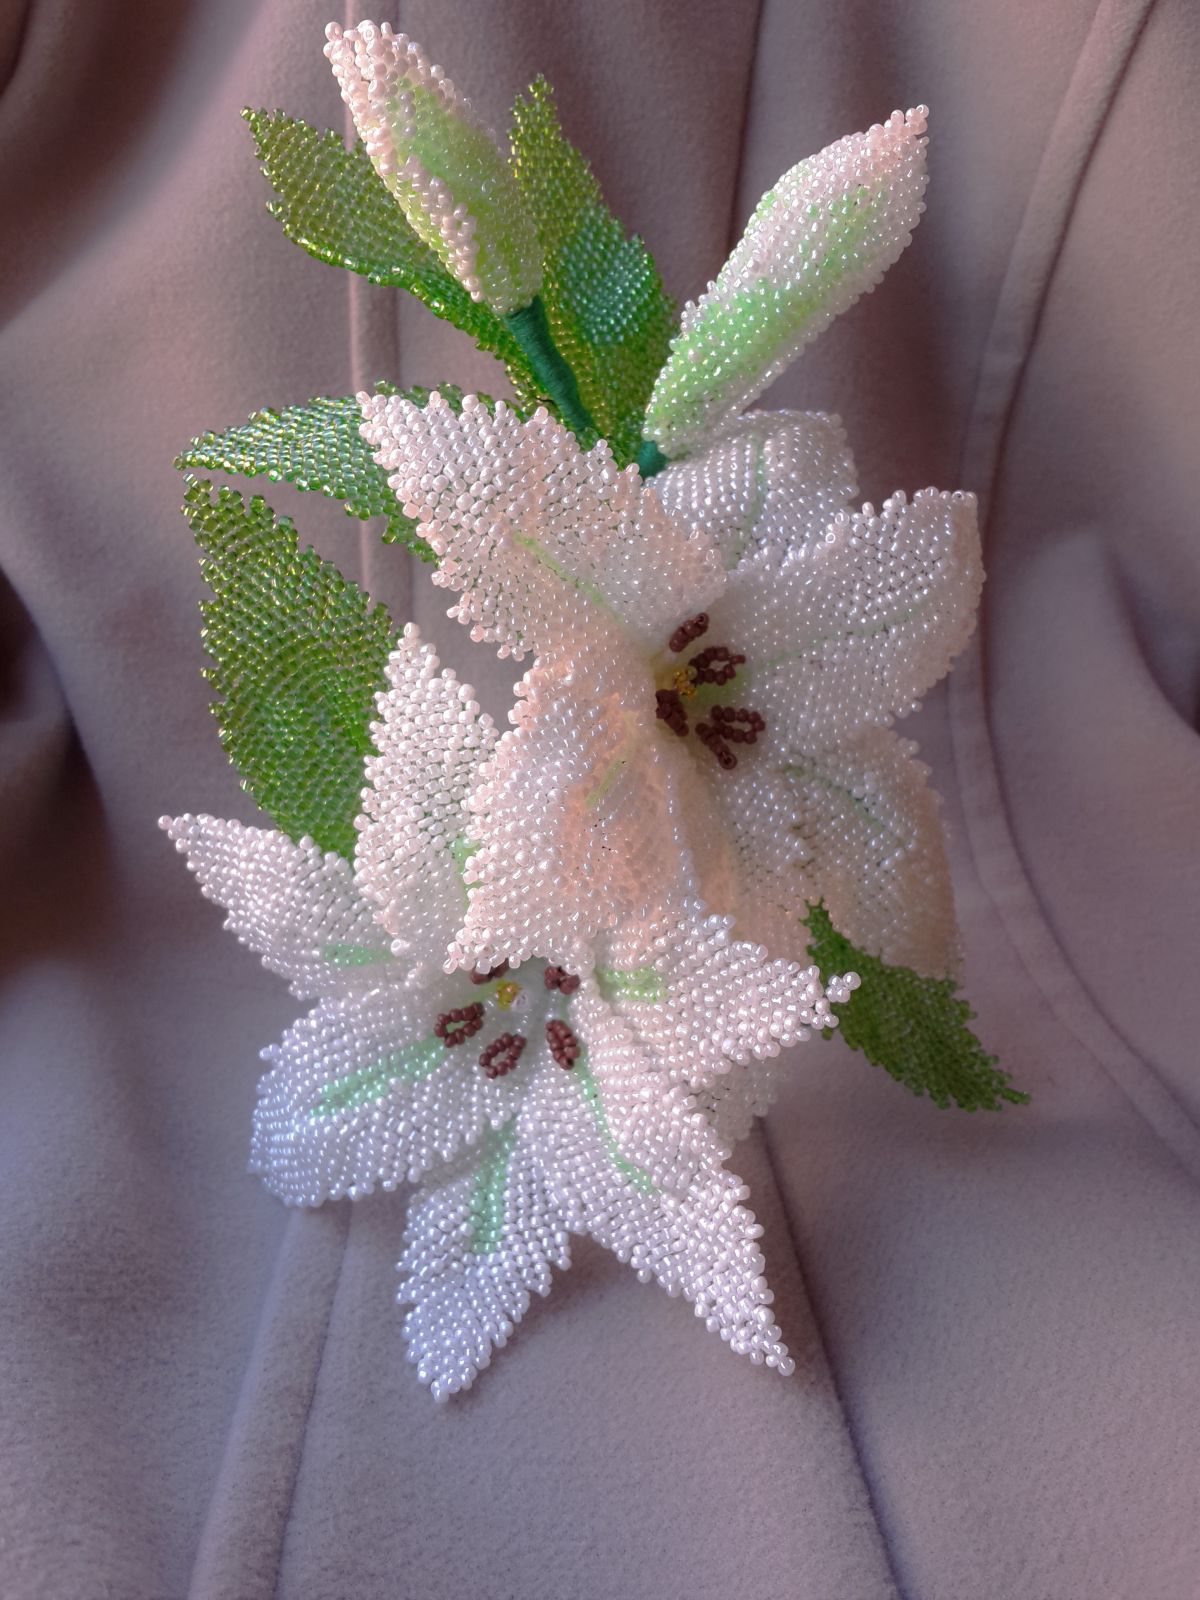 Лилия из бисера своими руками - пошаговый мастер-класс создания цветка. красивая лилия из бисера: как сделать амазонскую, тигровую, водяную лилию своими руками из бисера